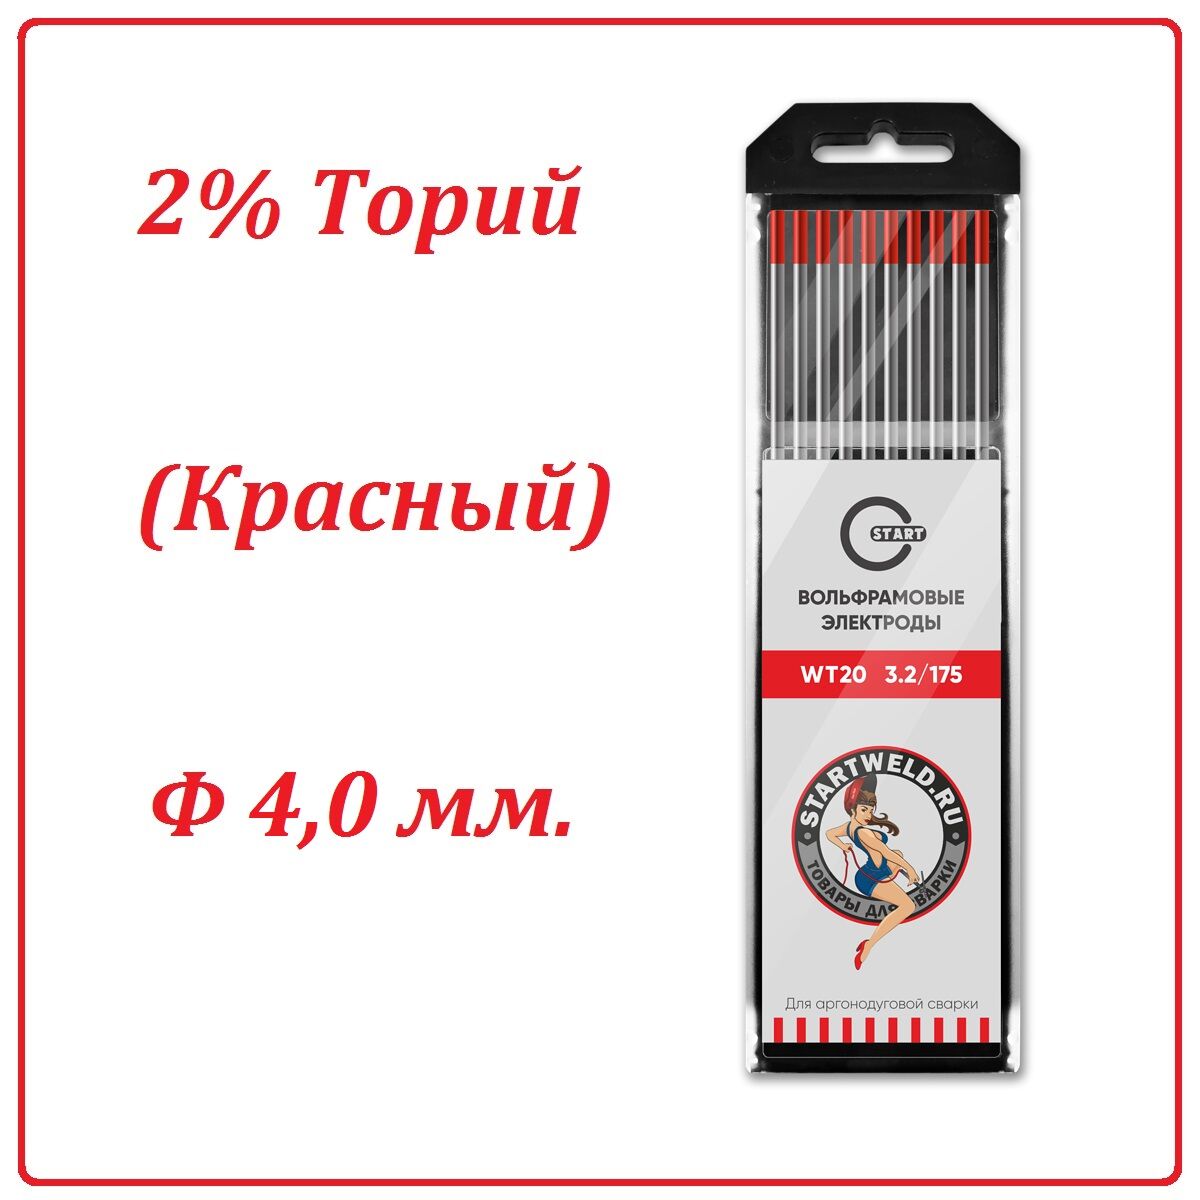 Вольфрамовый электрод WT 20 (4,0 мм. Красный 2% диоксида тория)